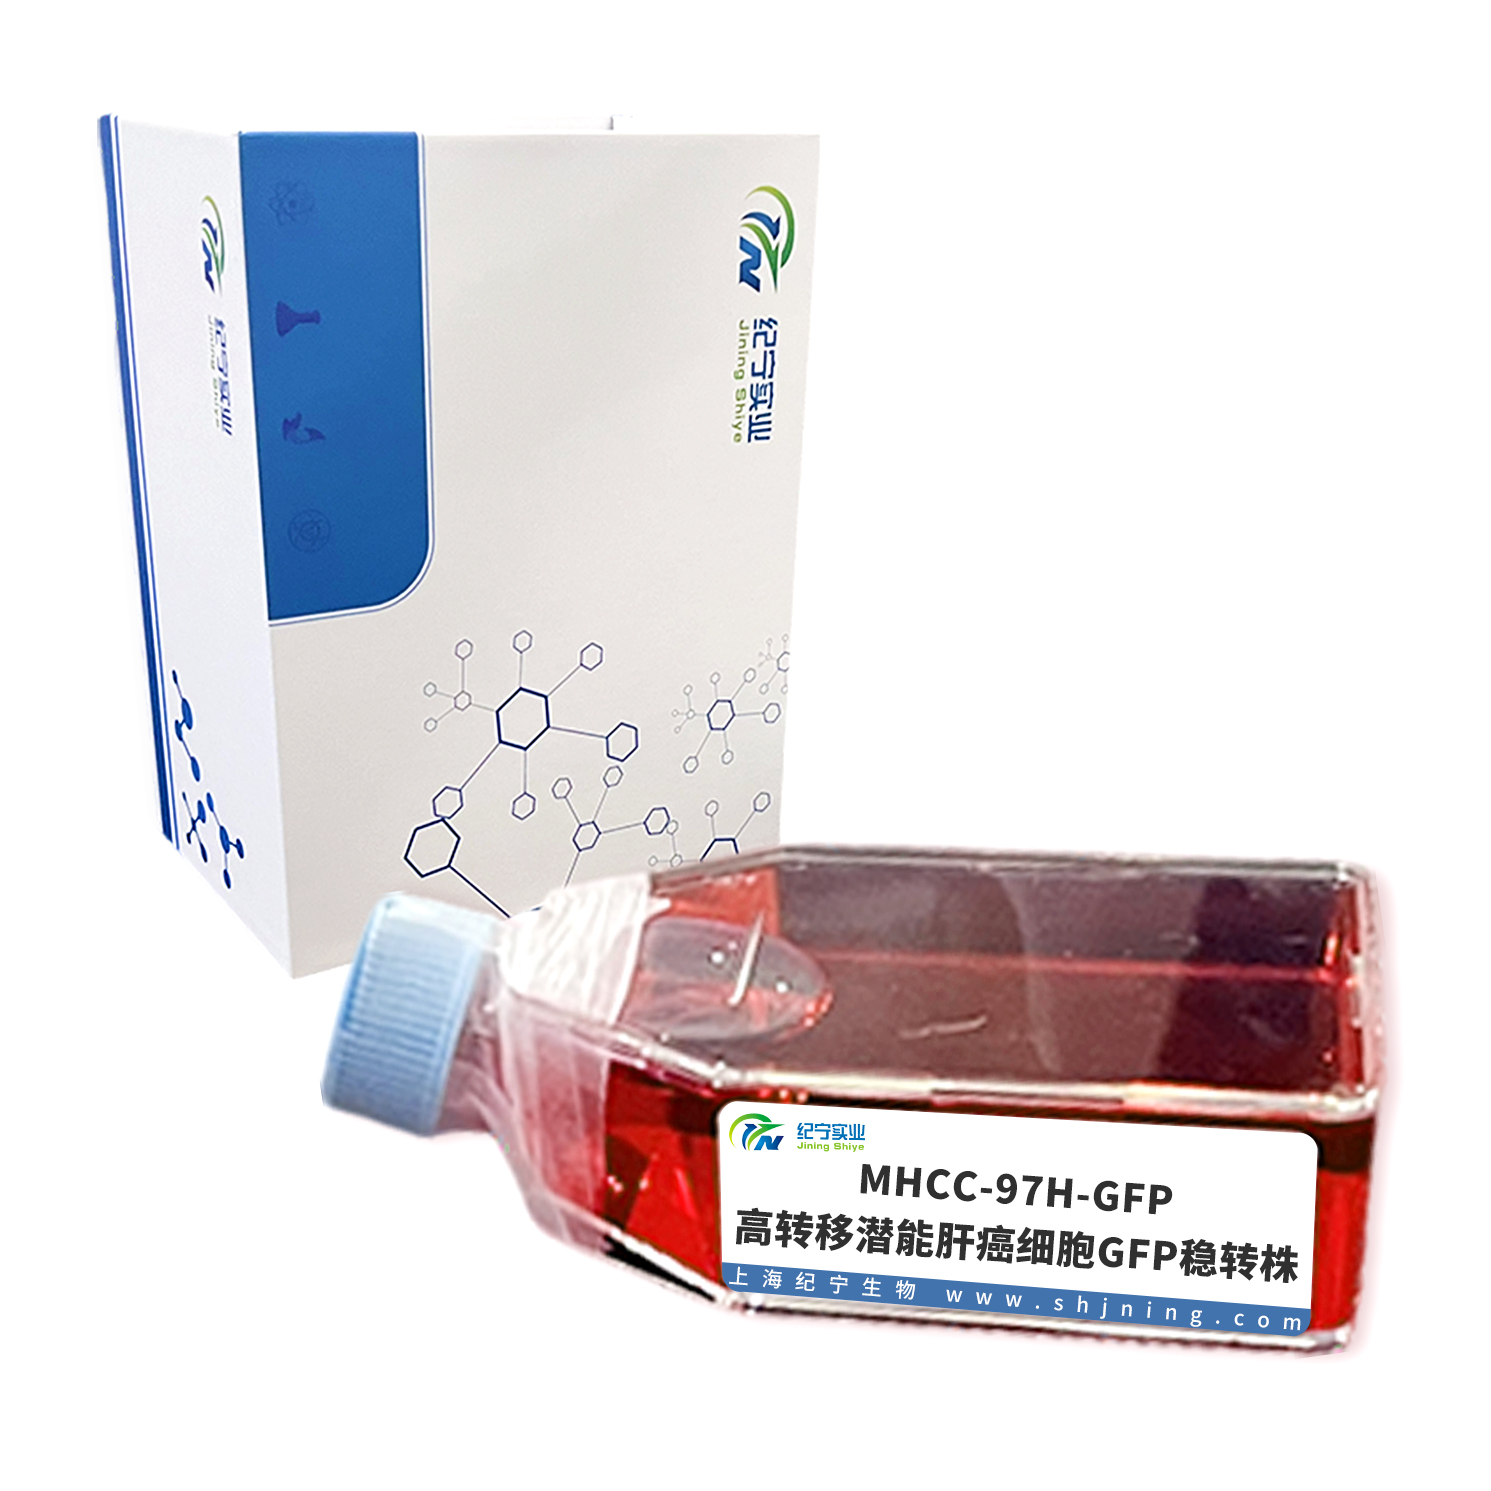 MHCC-97H-GFP 高转移潜能肝癌细胞GFP稳转株